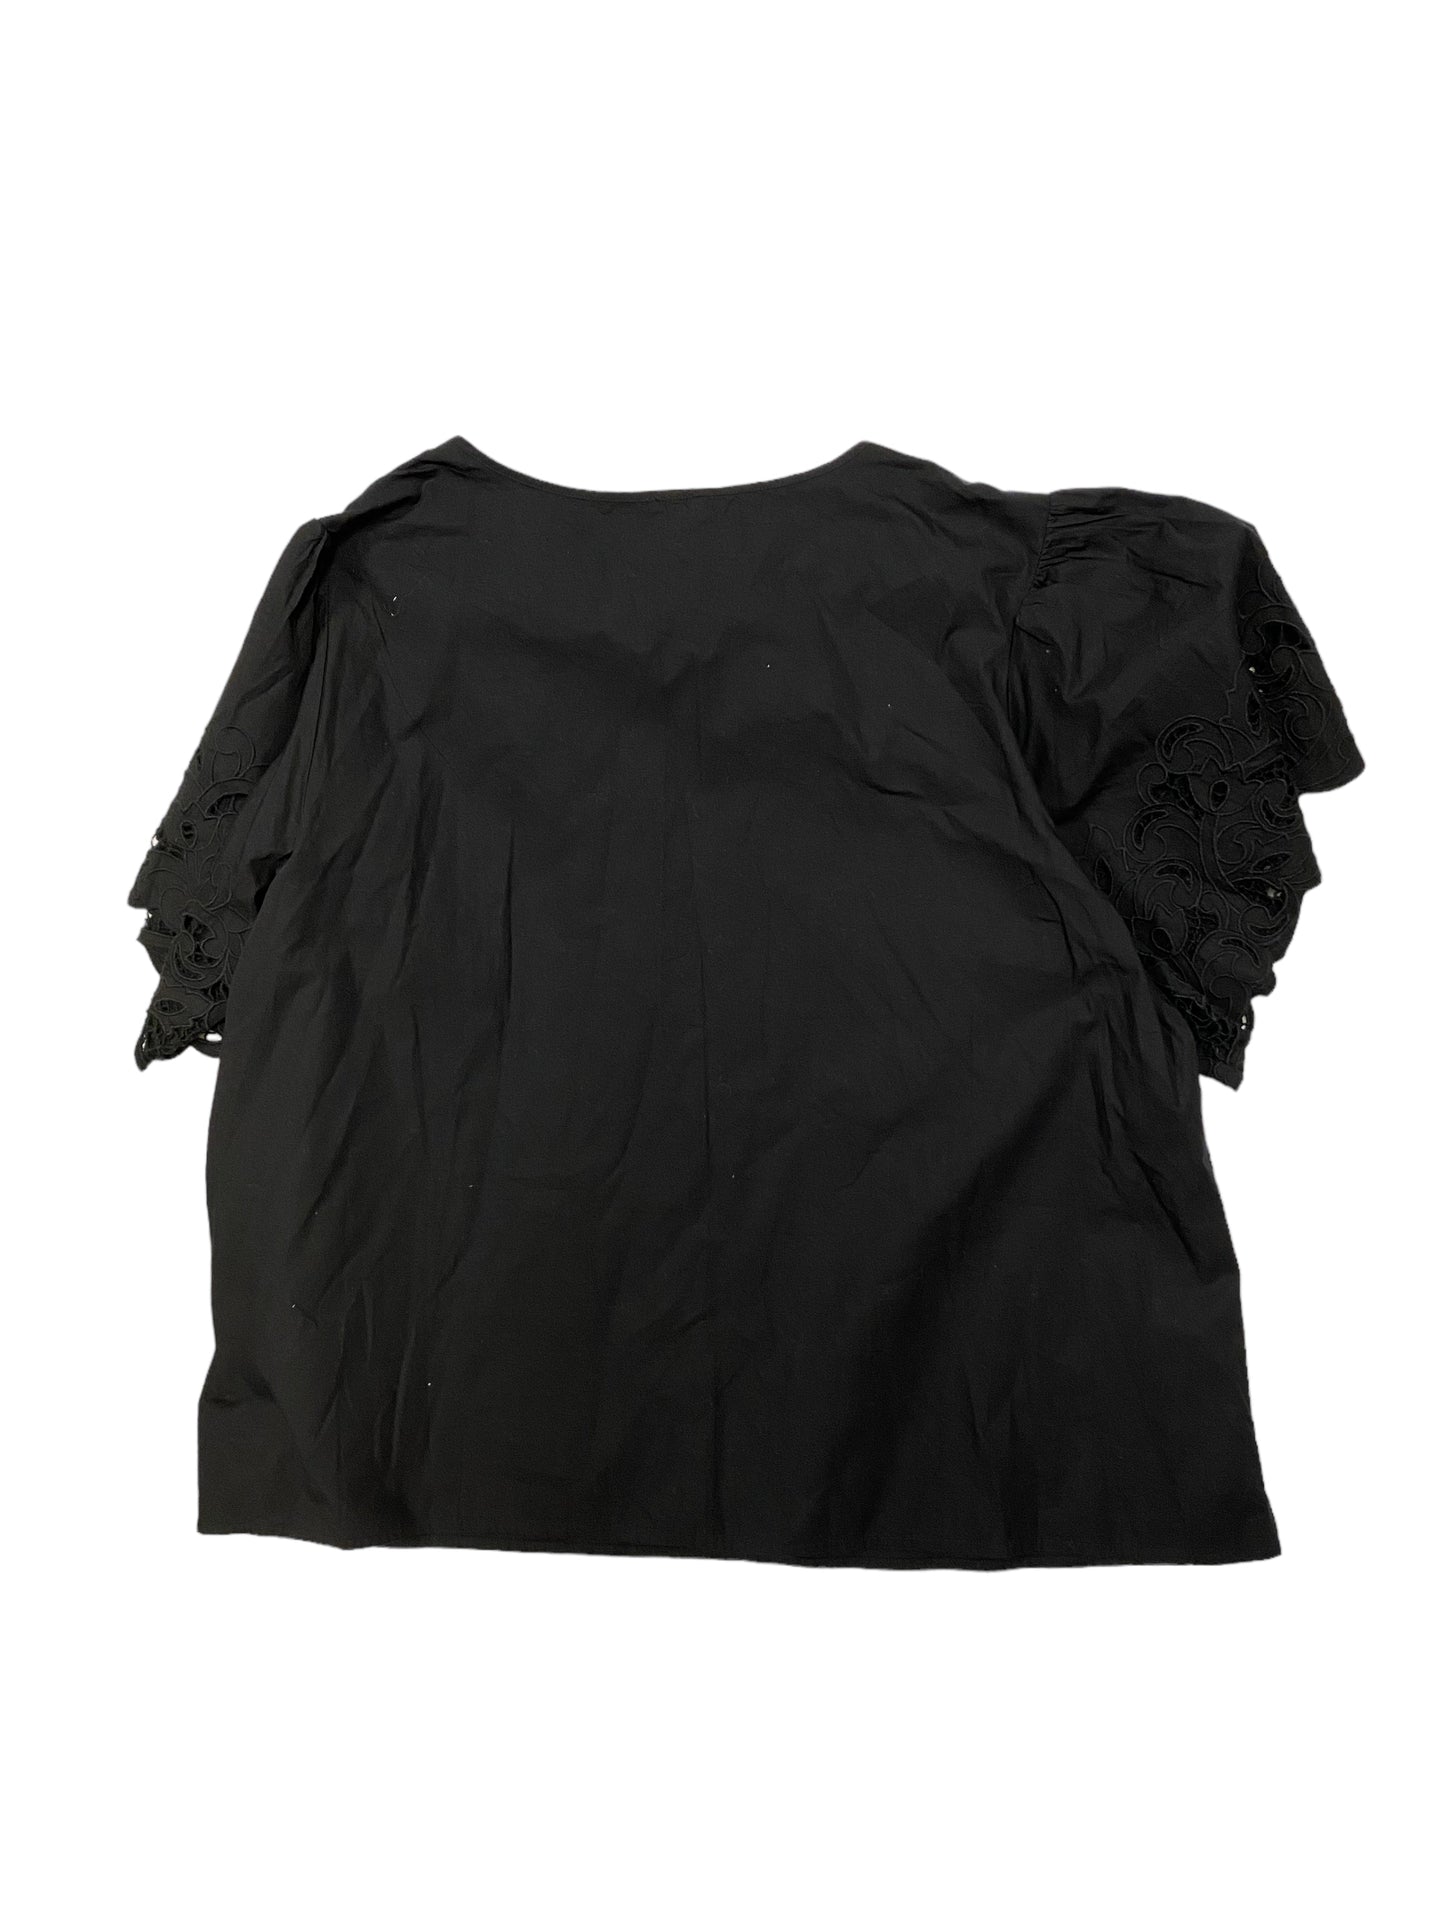 Black Top Short Sleeve Anne Klein, Size 3x